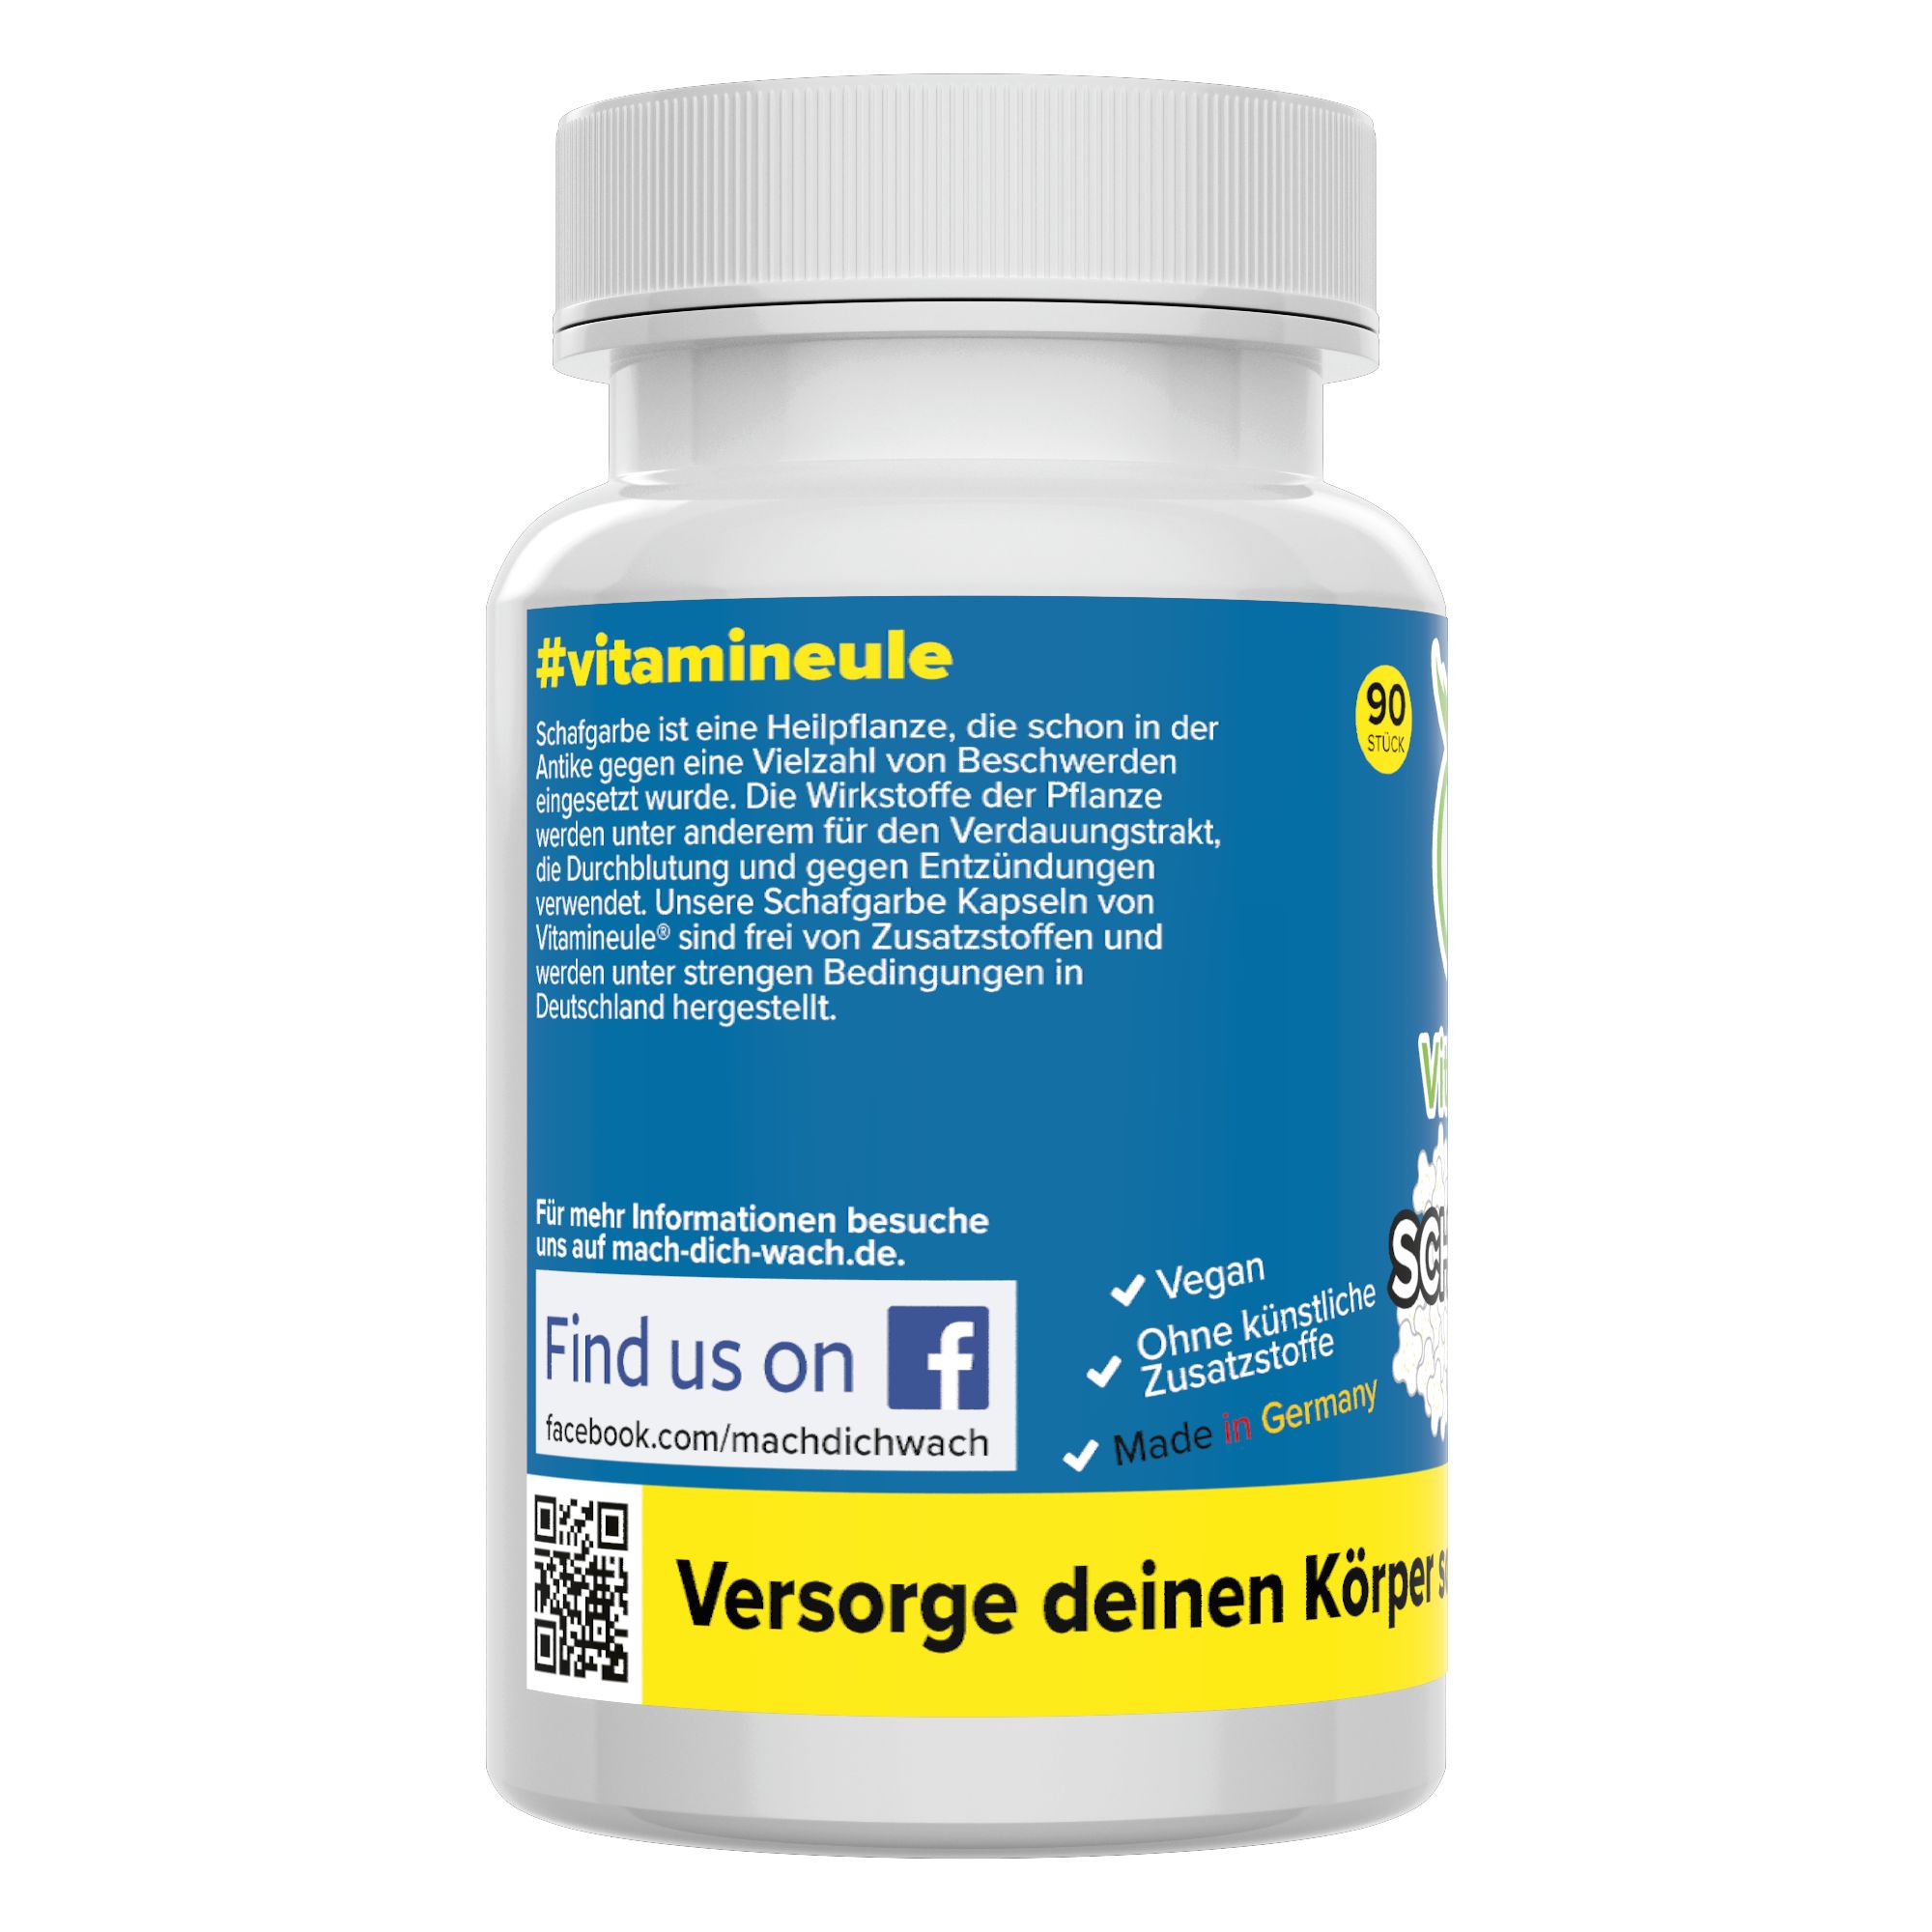 Schafgarbe Kapseln - Vitamineule®